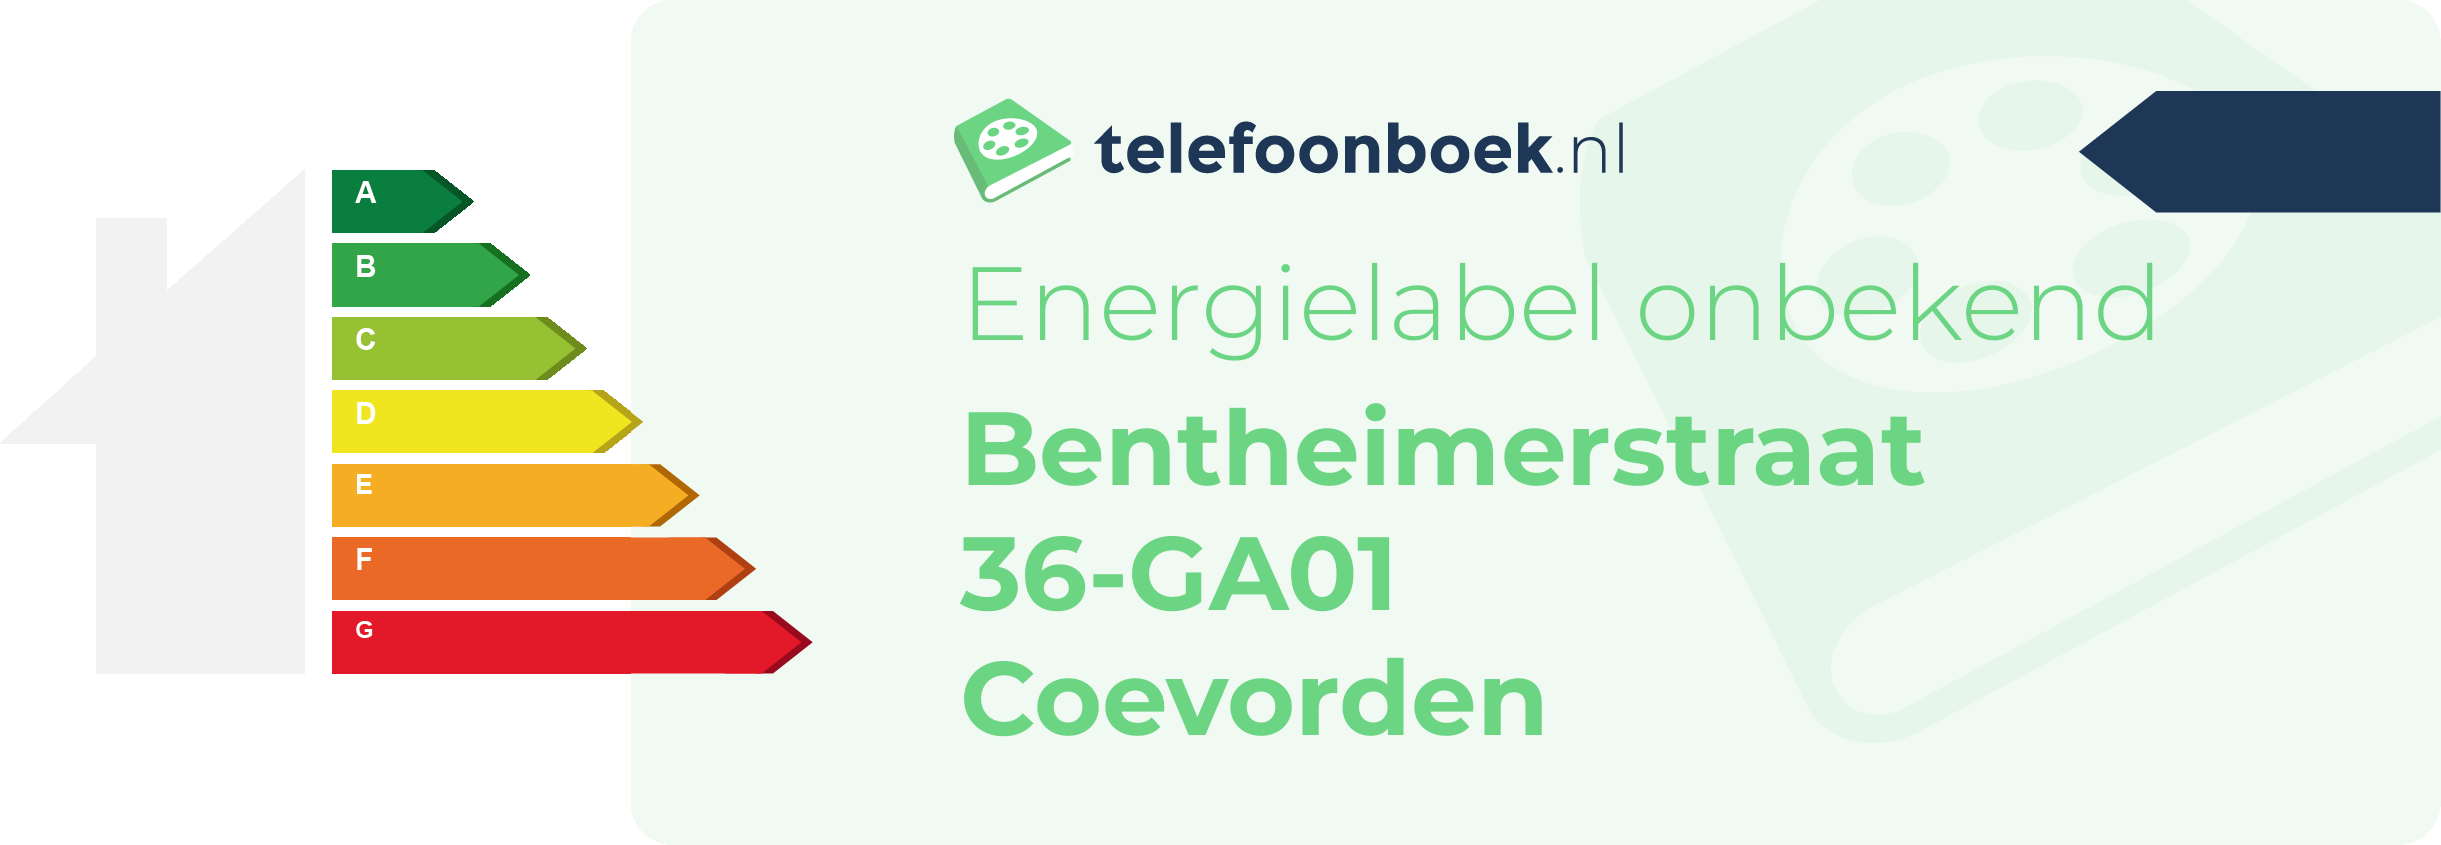 Energielabel Bentheimerstraat 36-GA01 Coevorden